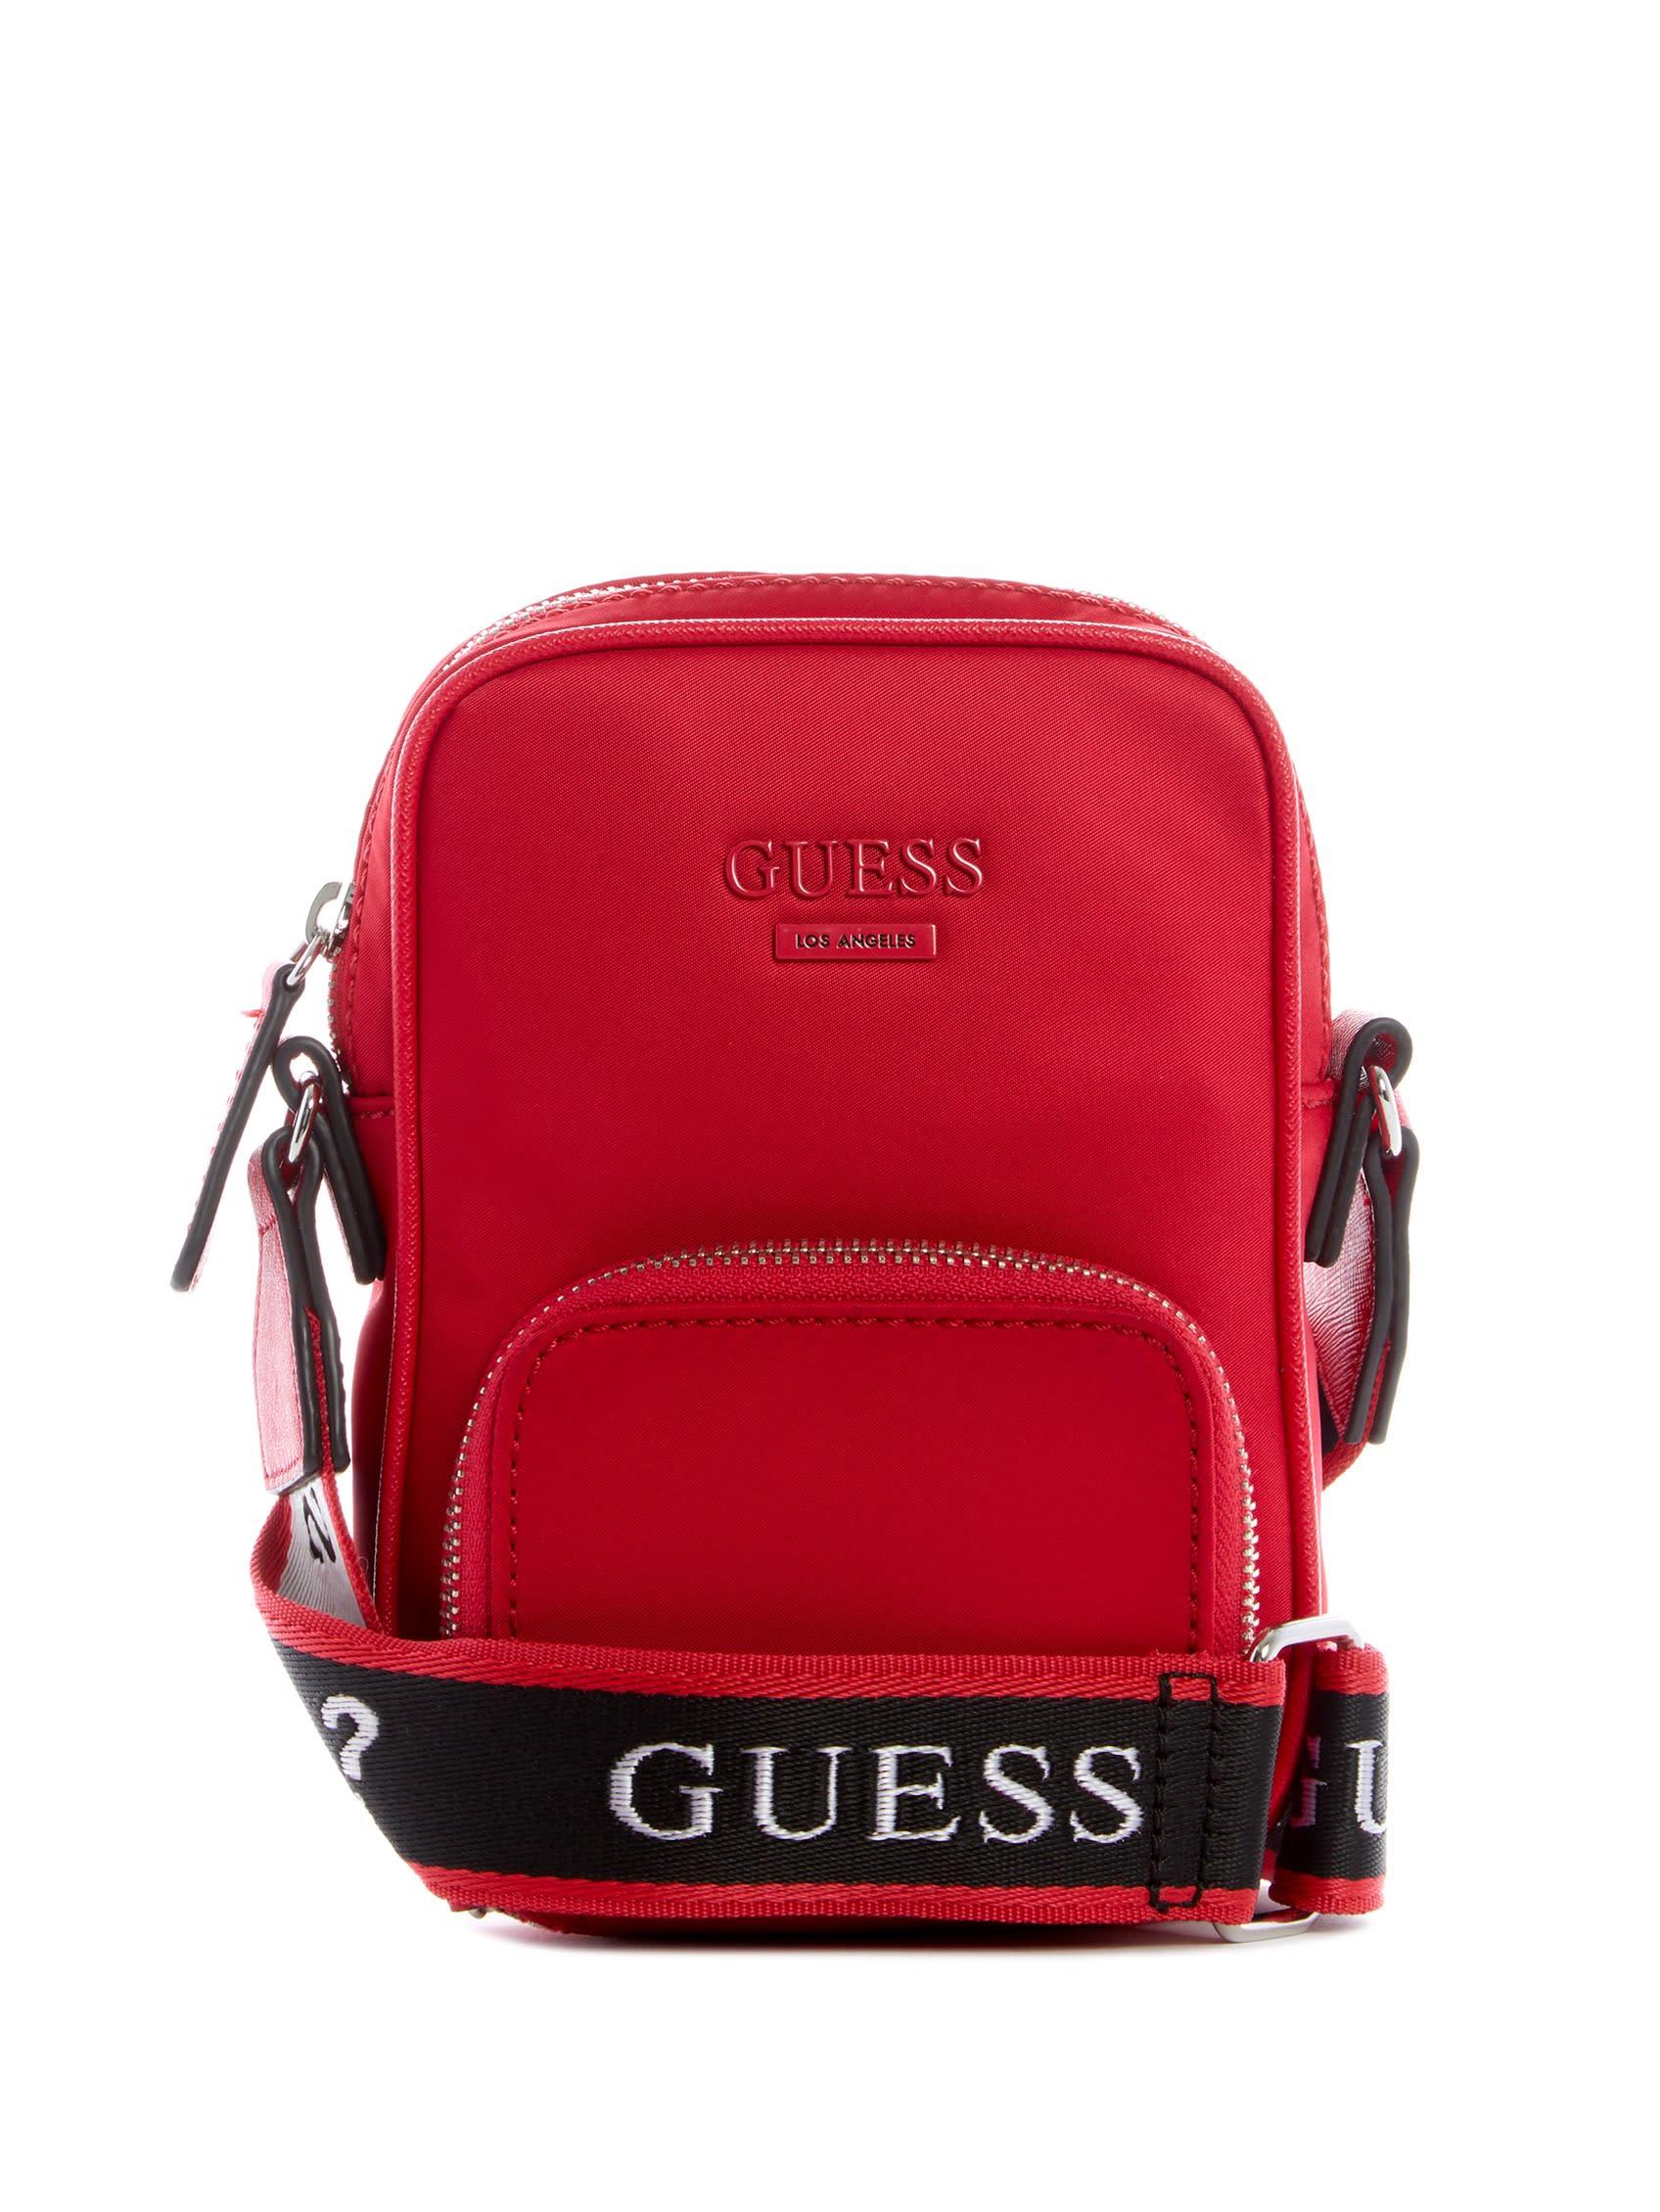 Guess Shoulder Bag in Red